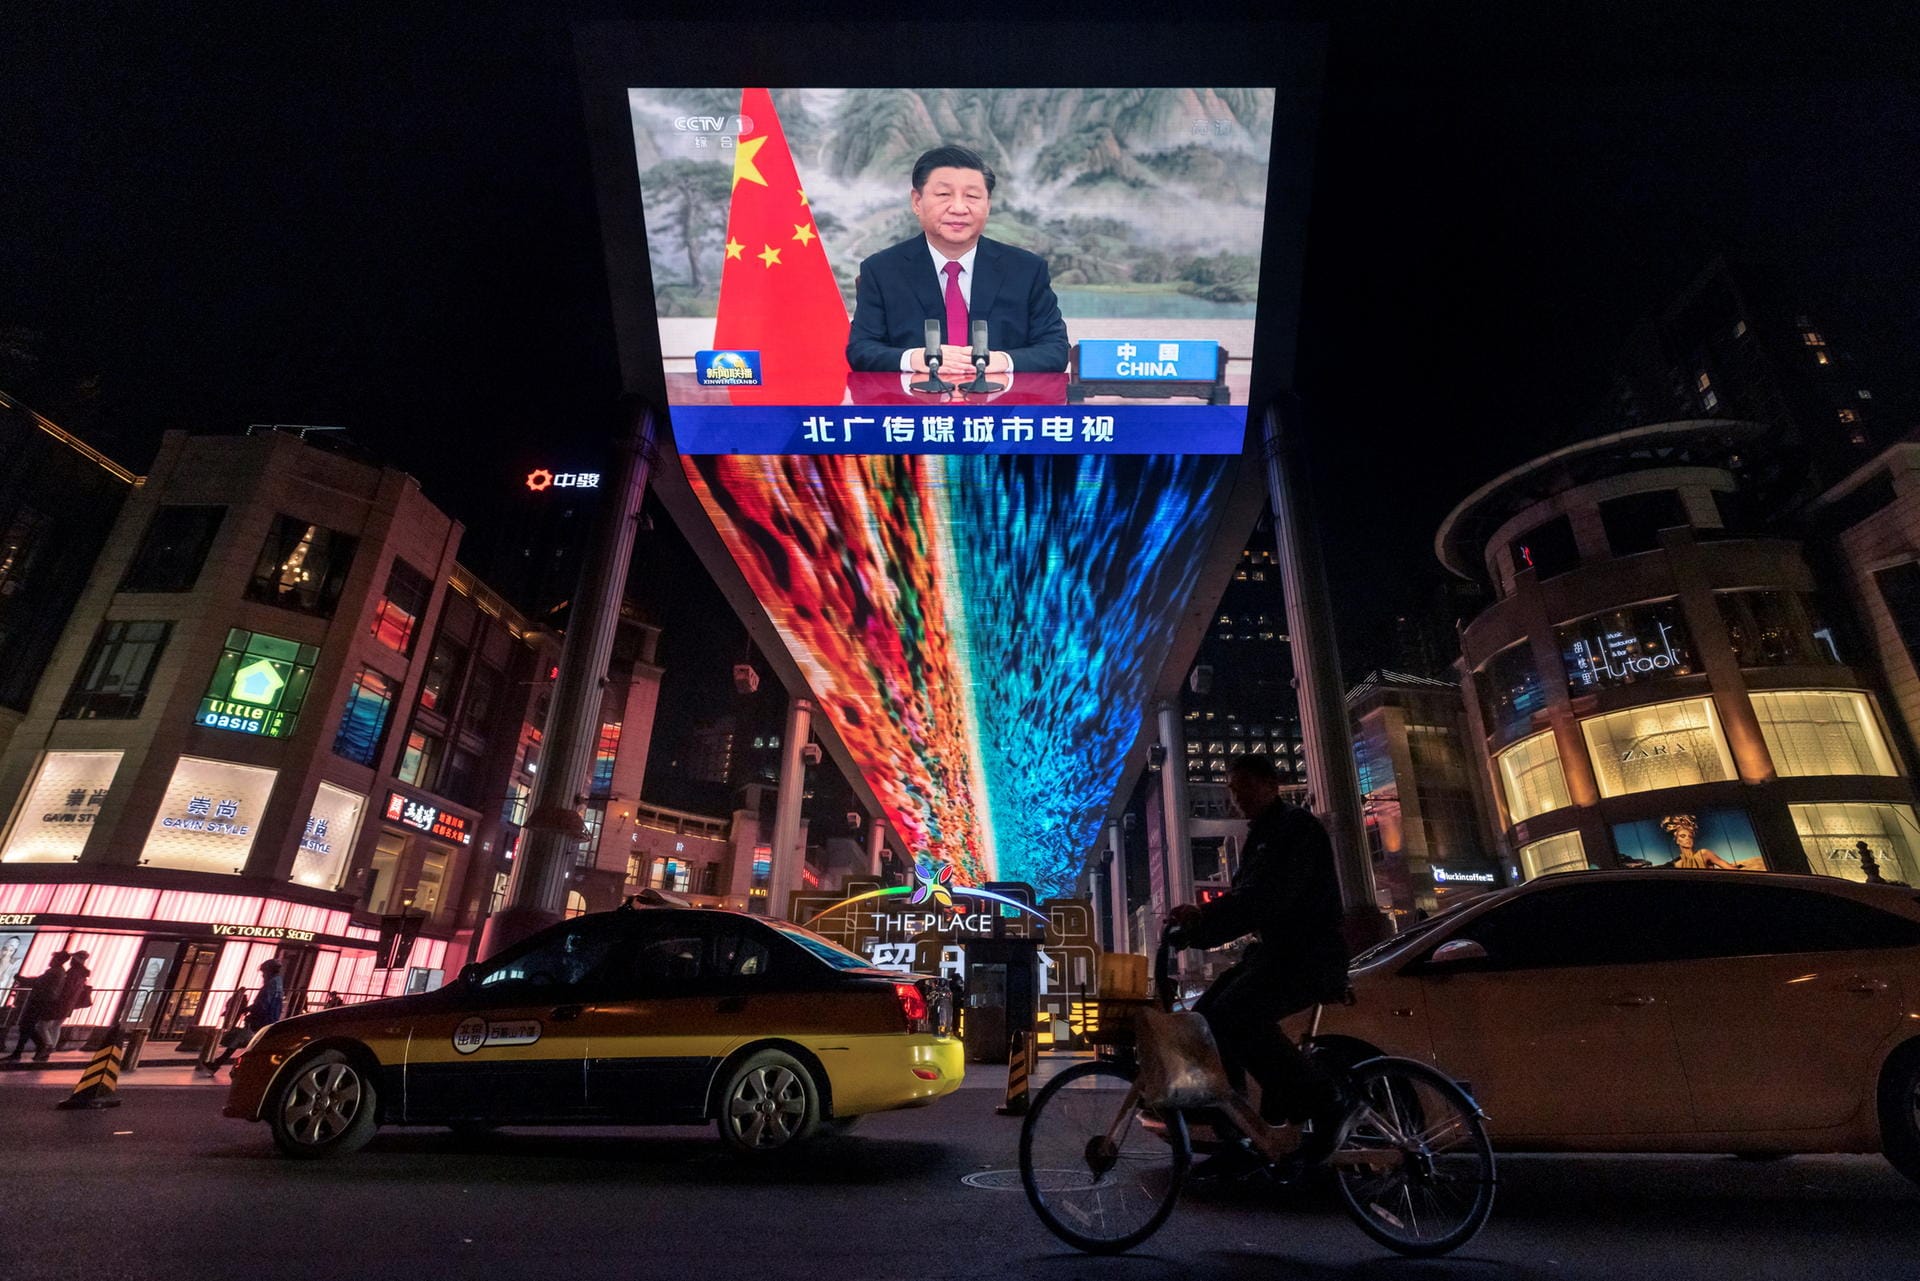 Xi Jinping: Die Rede des chinesischen Präsidenten zum G20-Gipfel wurde auch in Peking übertragen.